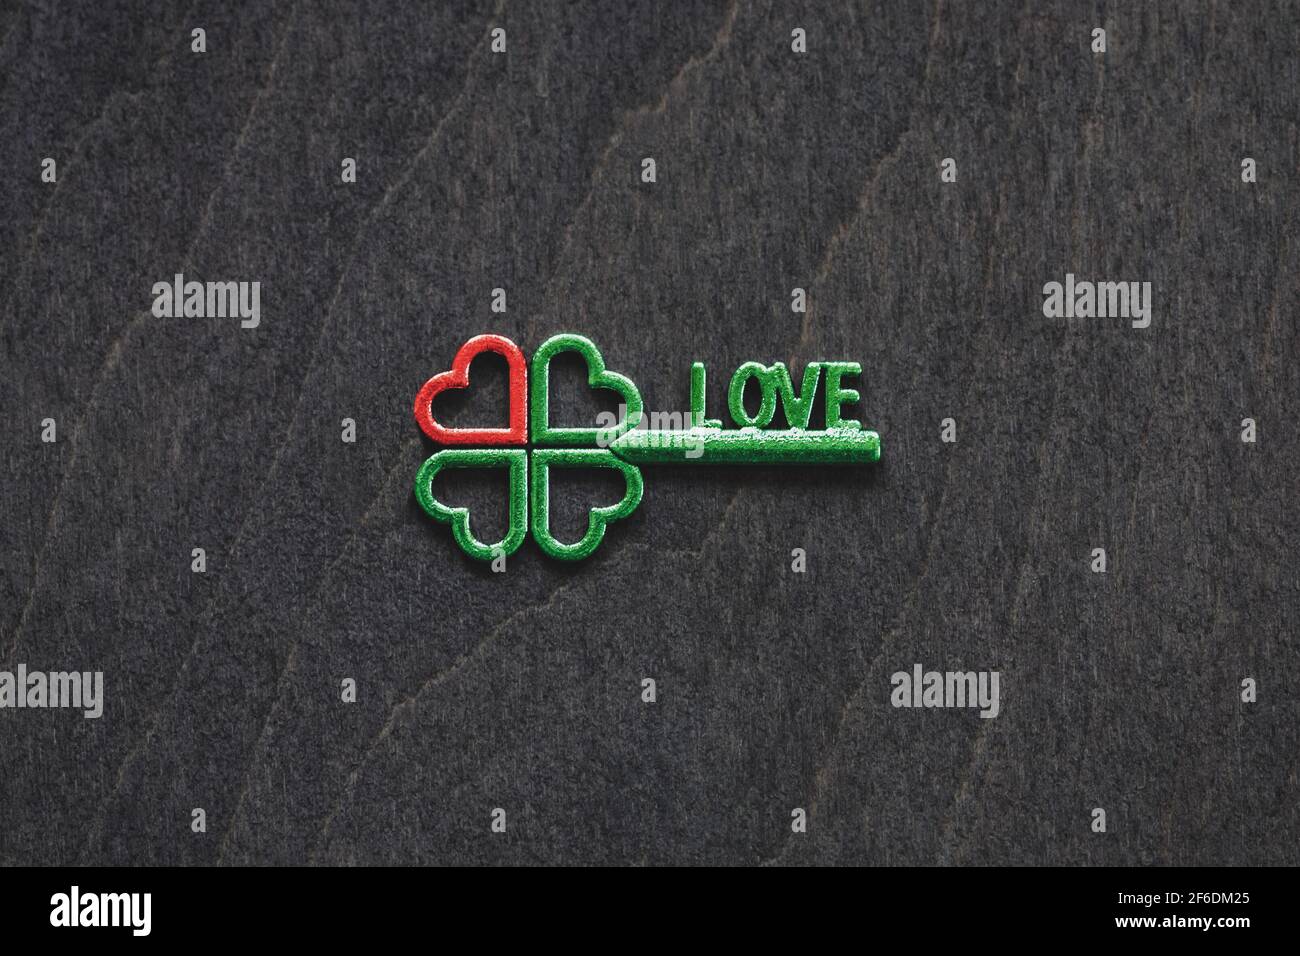 Vierblättriger grüner Kleeblatt-Schlüssel mit rotem Herz als Symbol Von Liebe und Glück Konzept Stockfoto